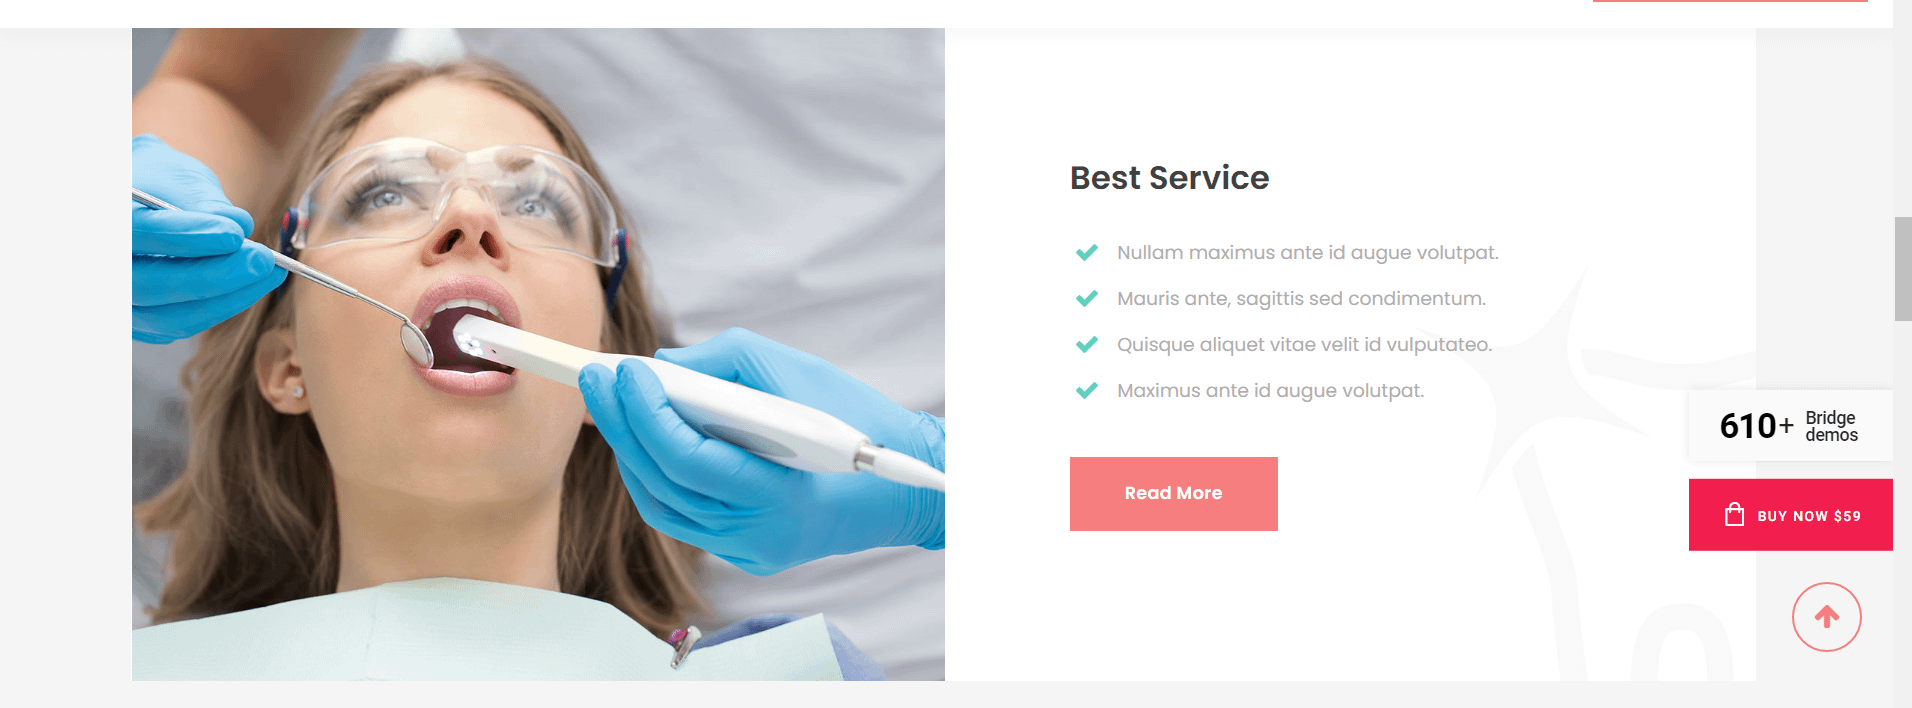 Dental - dentistry